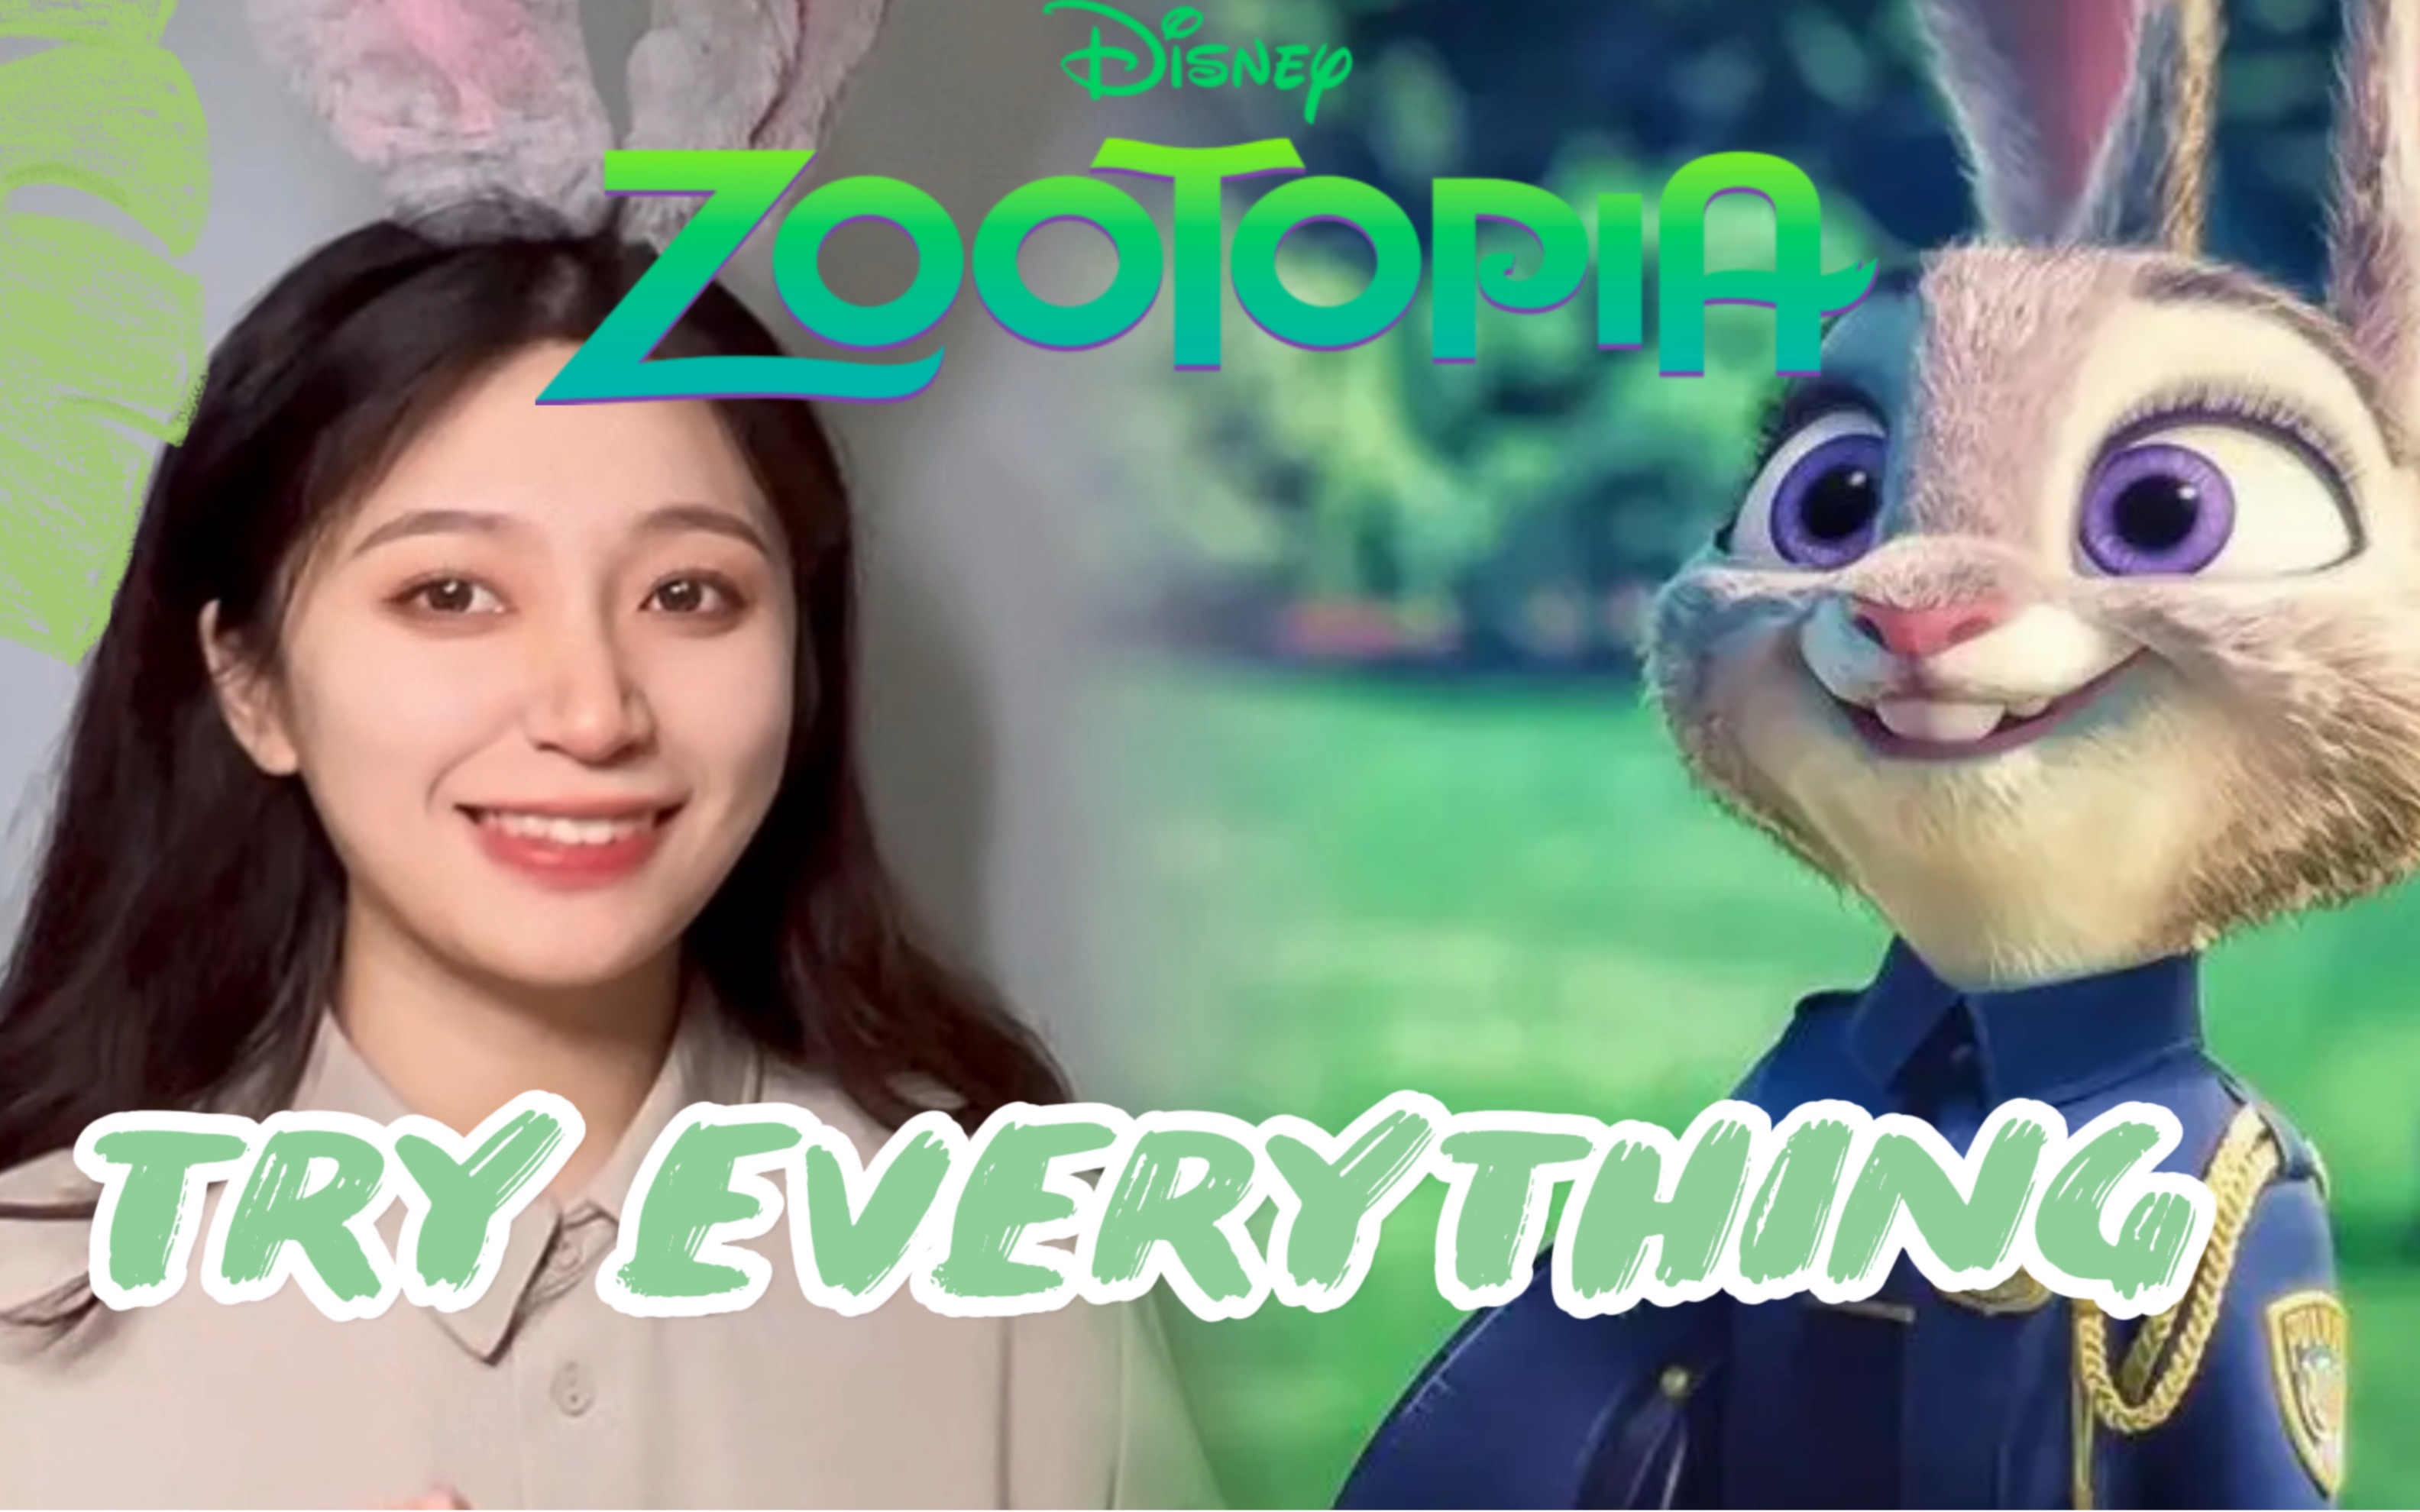 【颂十三】《Try everything》疯狂动物城（zootopia）主题曲甜版迪士尼嗓翻唱！